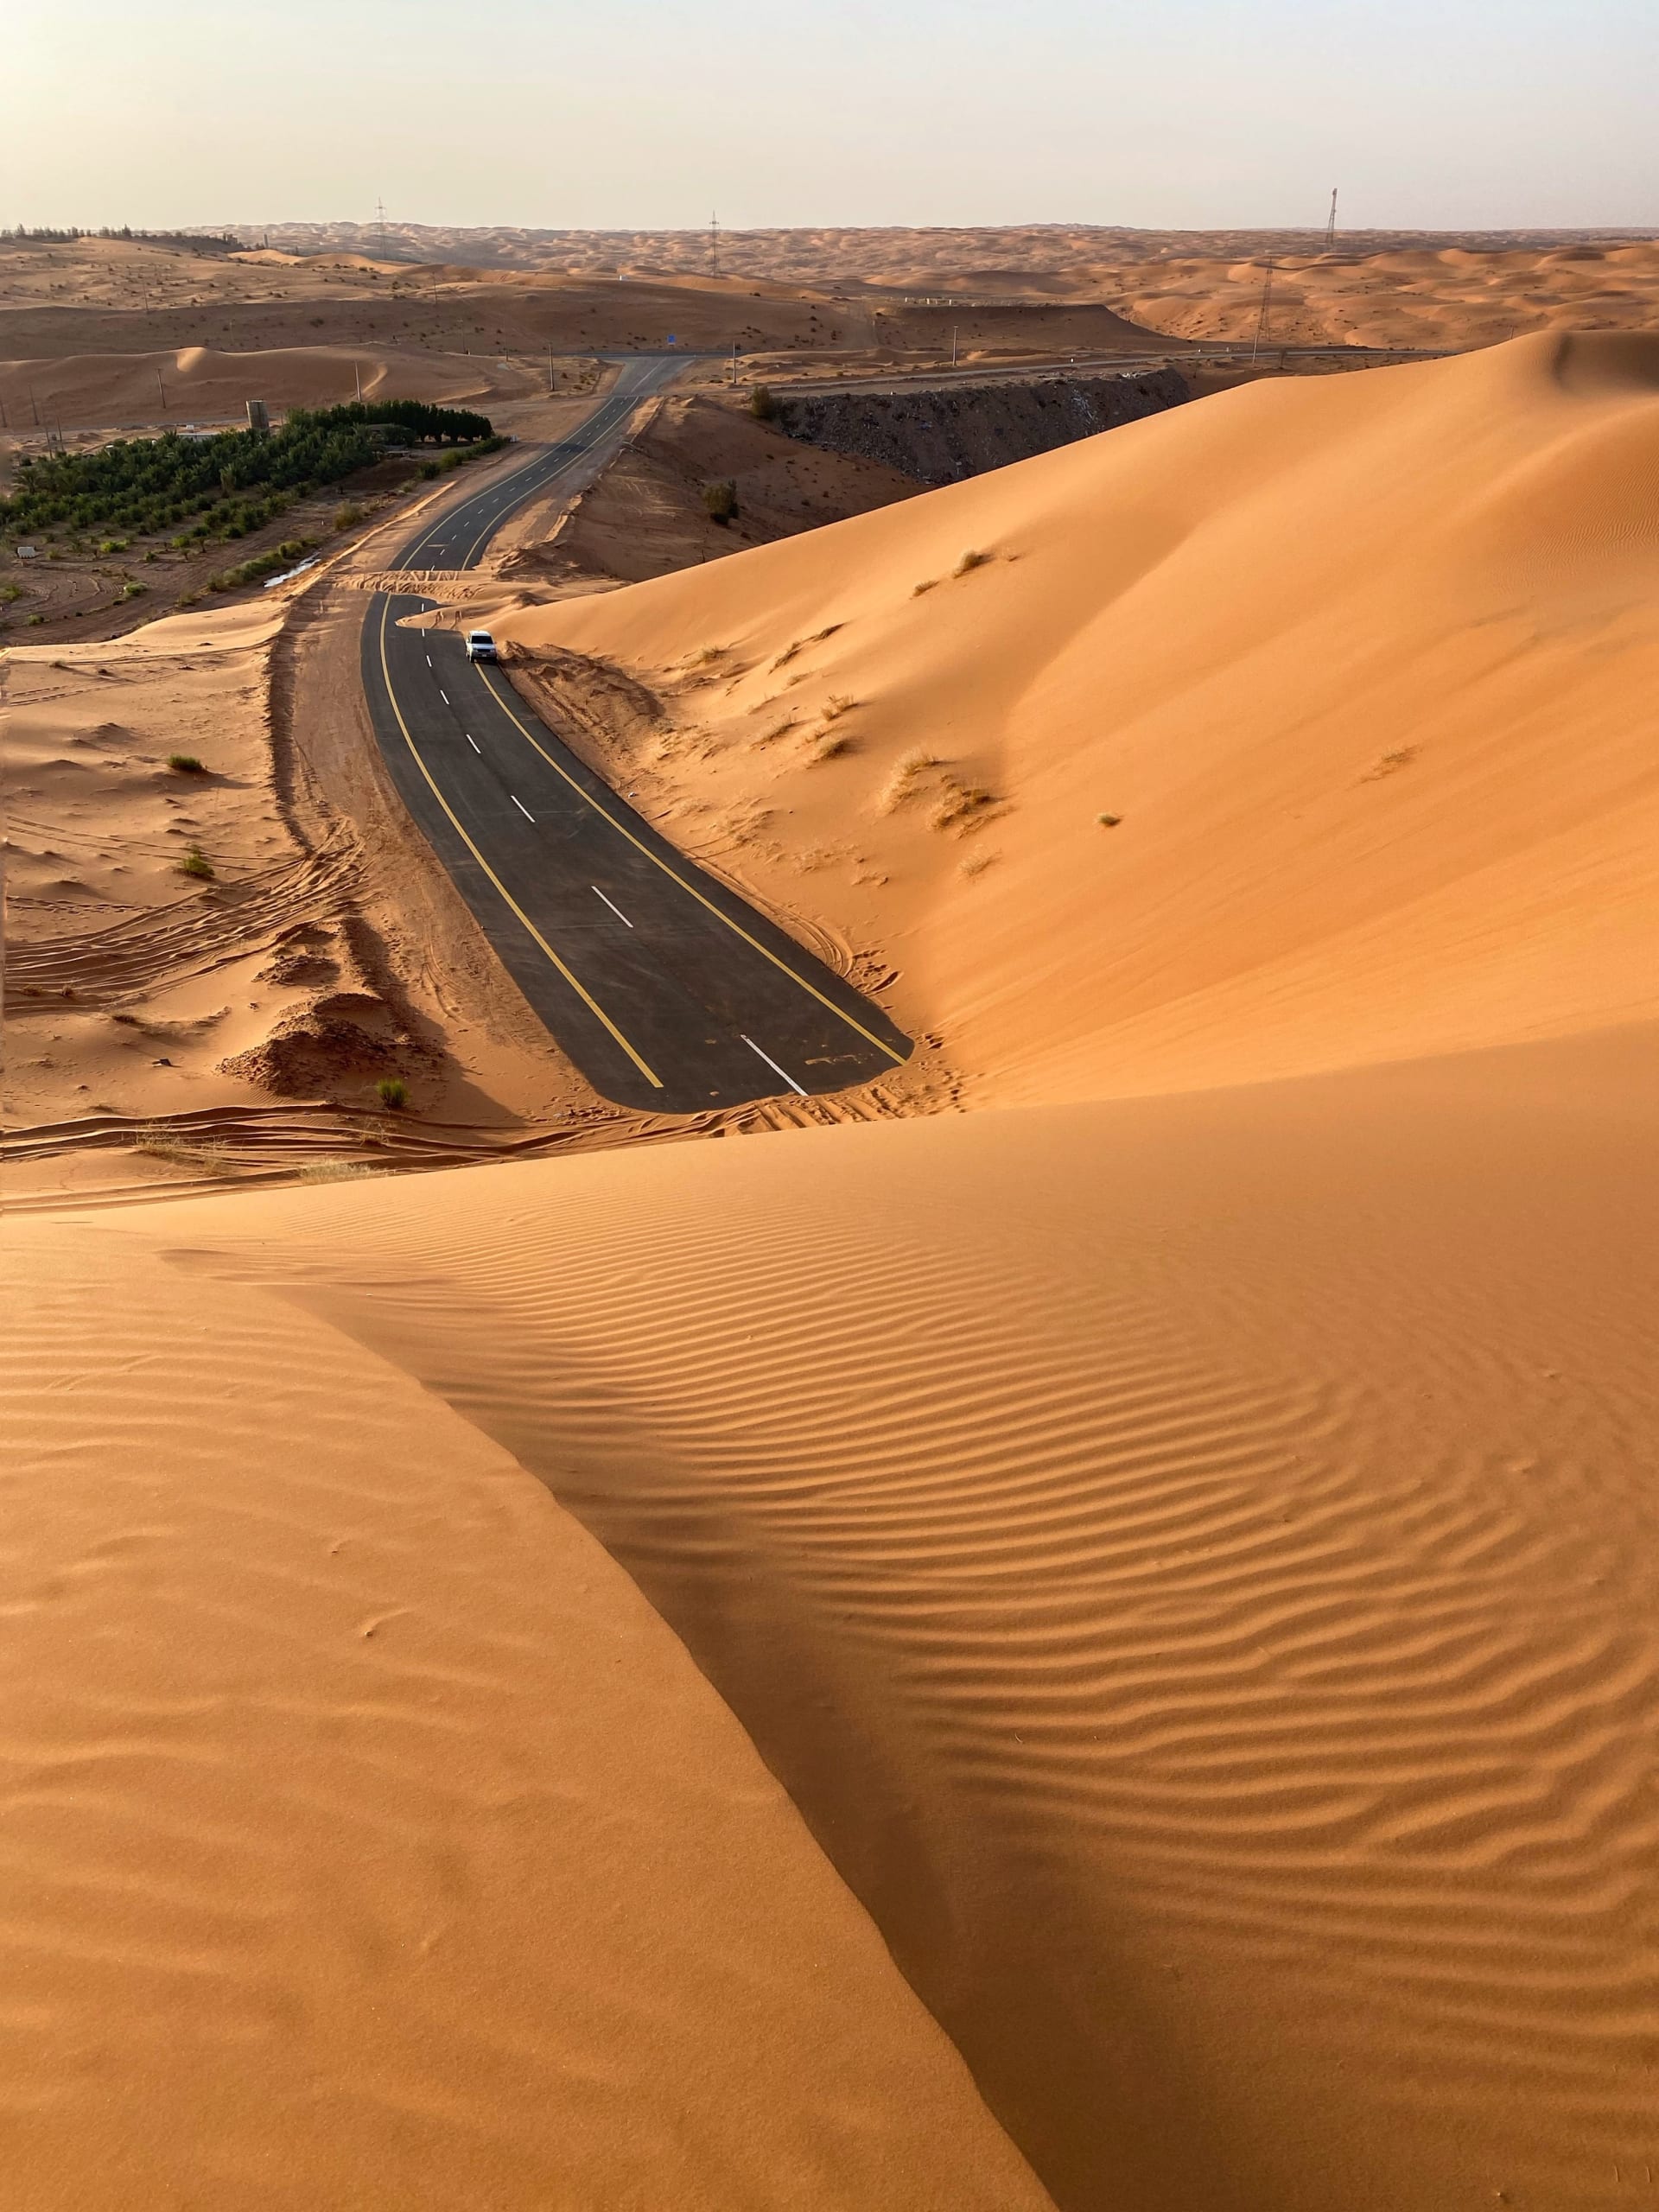 في السعودية.. مصور يوثق نزهة ساحرة في نهاية طريق مغطى بالرمال الذهبية